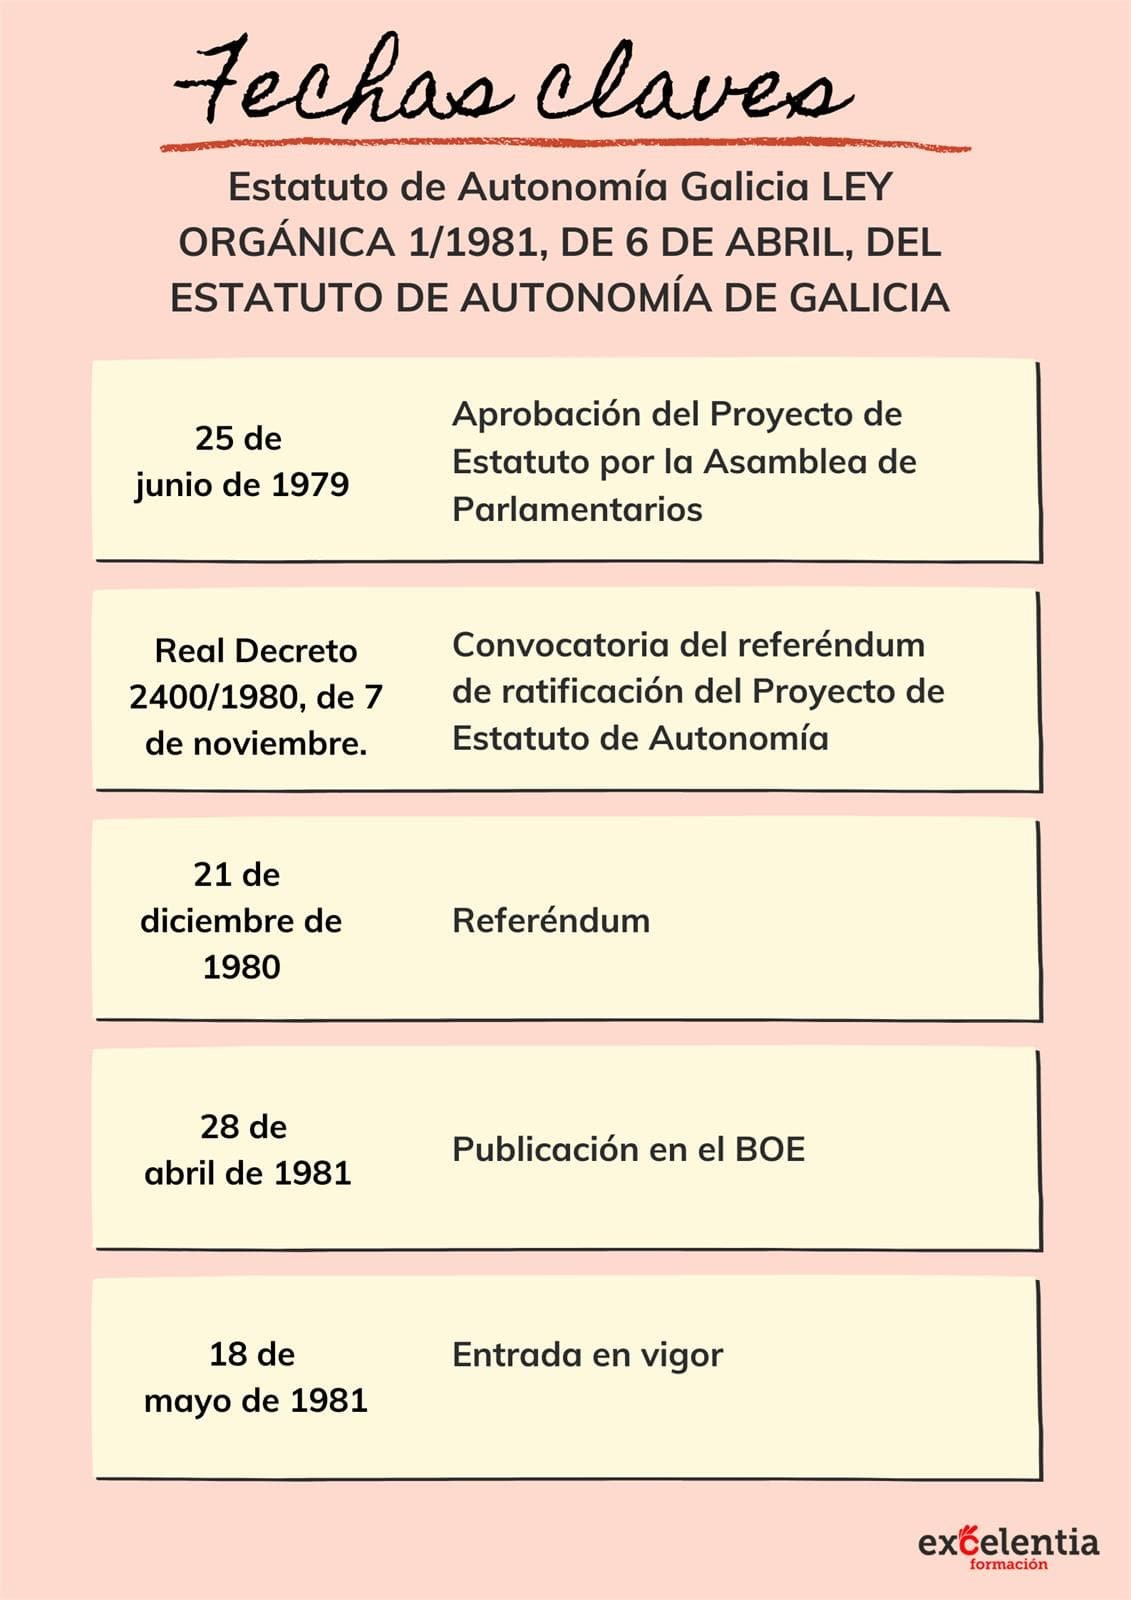 Esquema de datas clave - Estatuto de autonomía de Galicia - Imagen 1